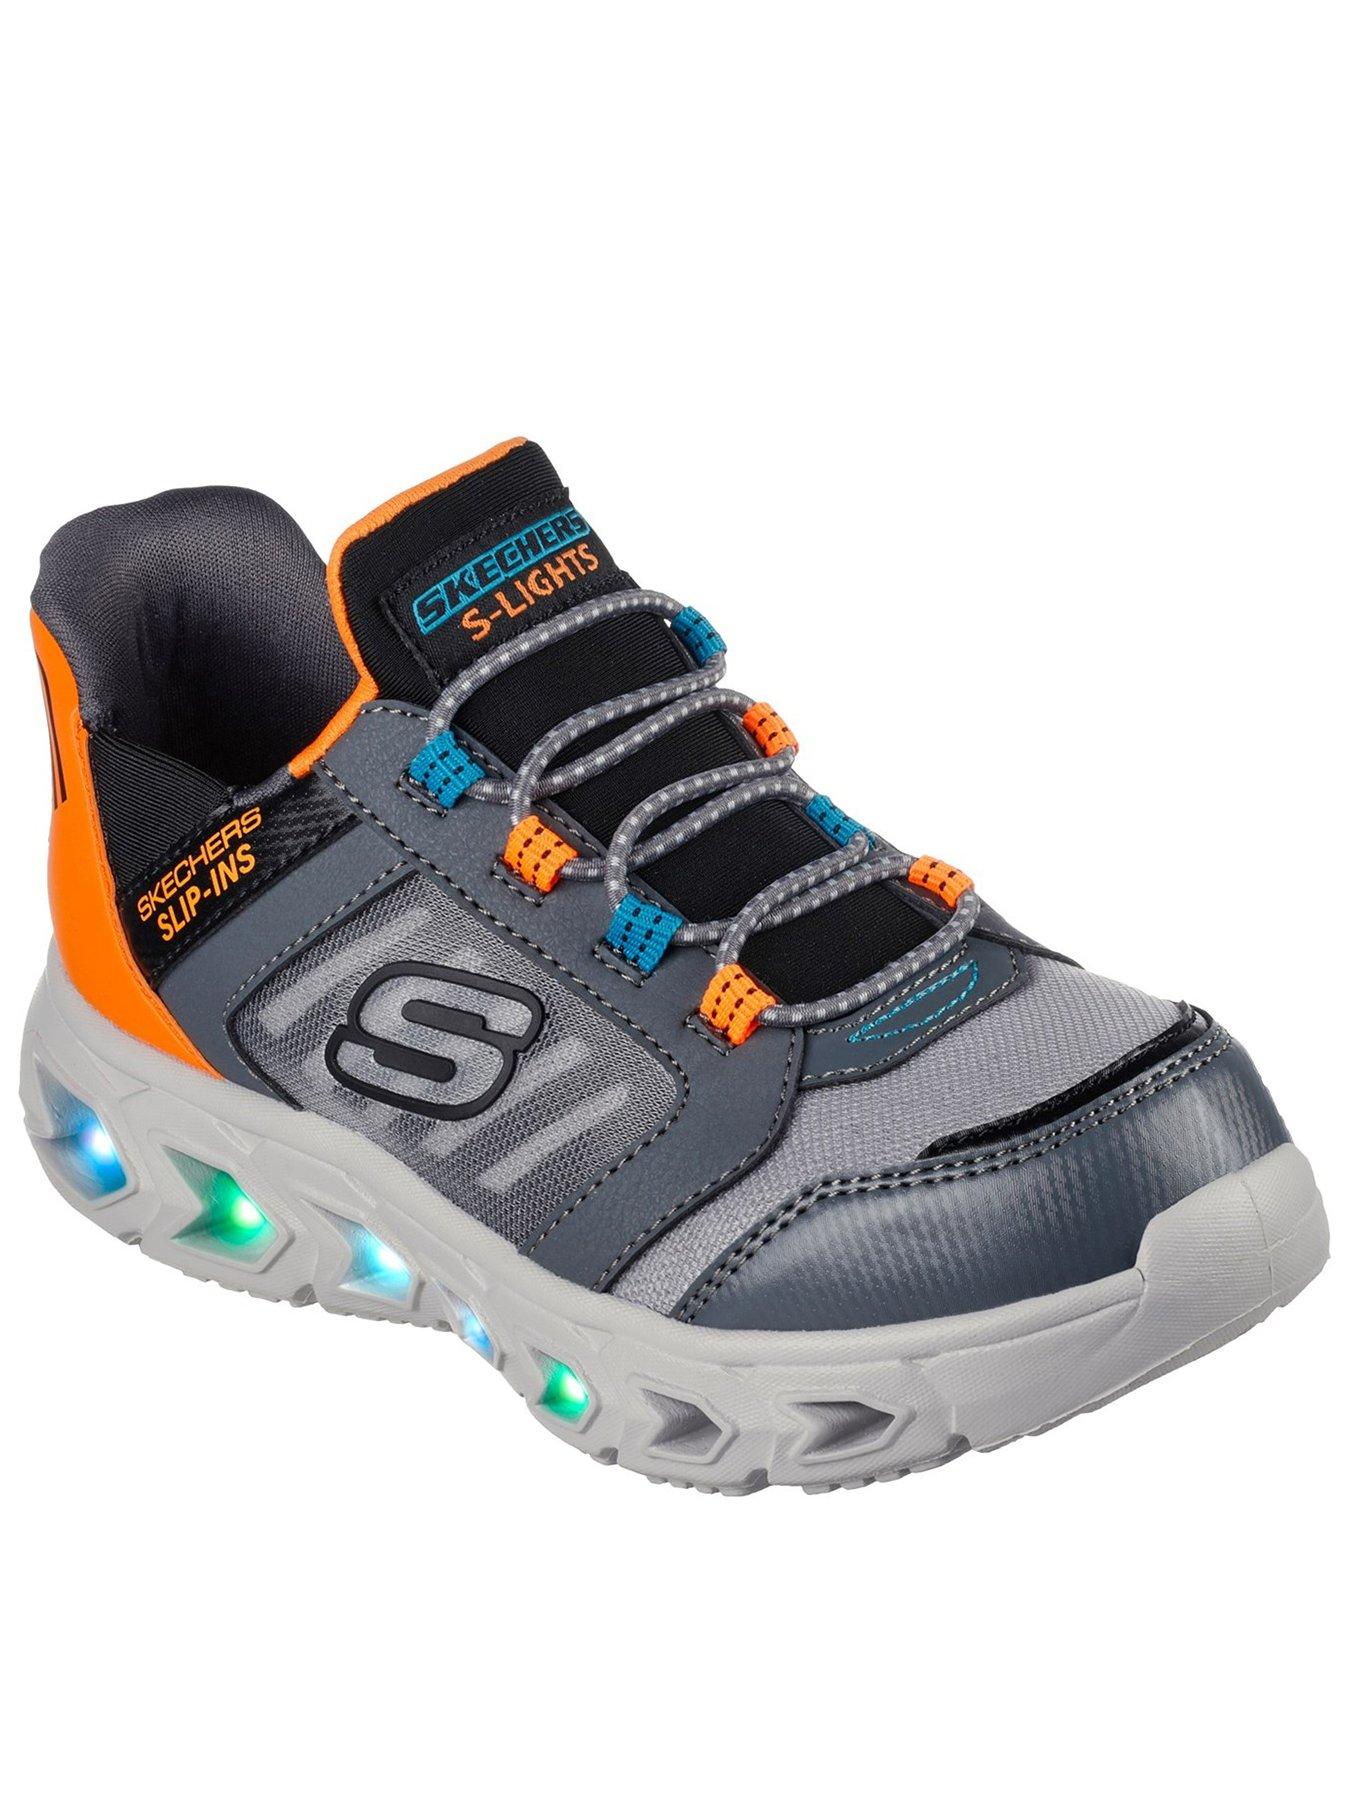 Skechers Hypno-flash 2.0 Odelux Lighted Slip Ins Trainer, Grey, Size 1.5 Older